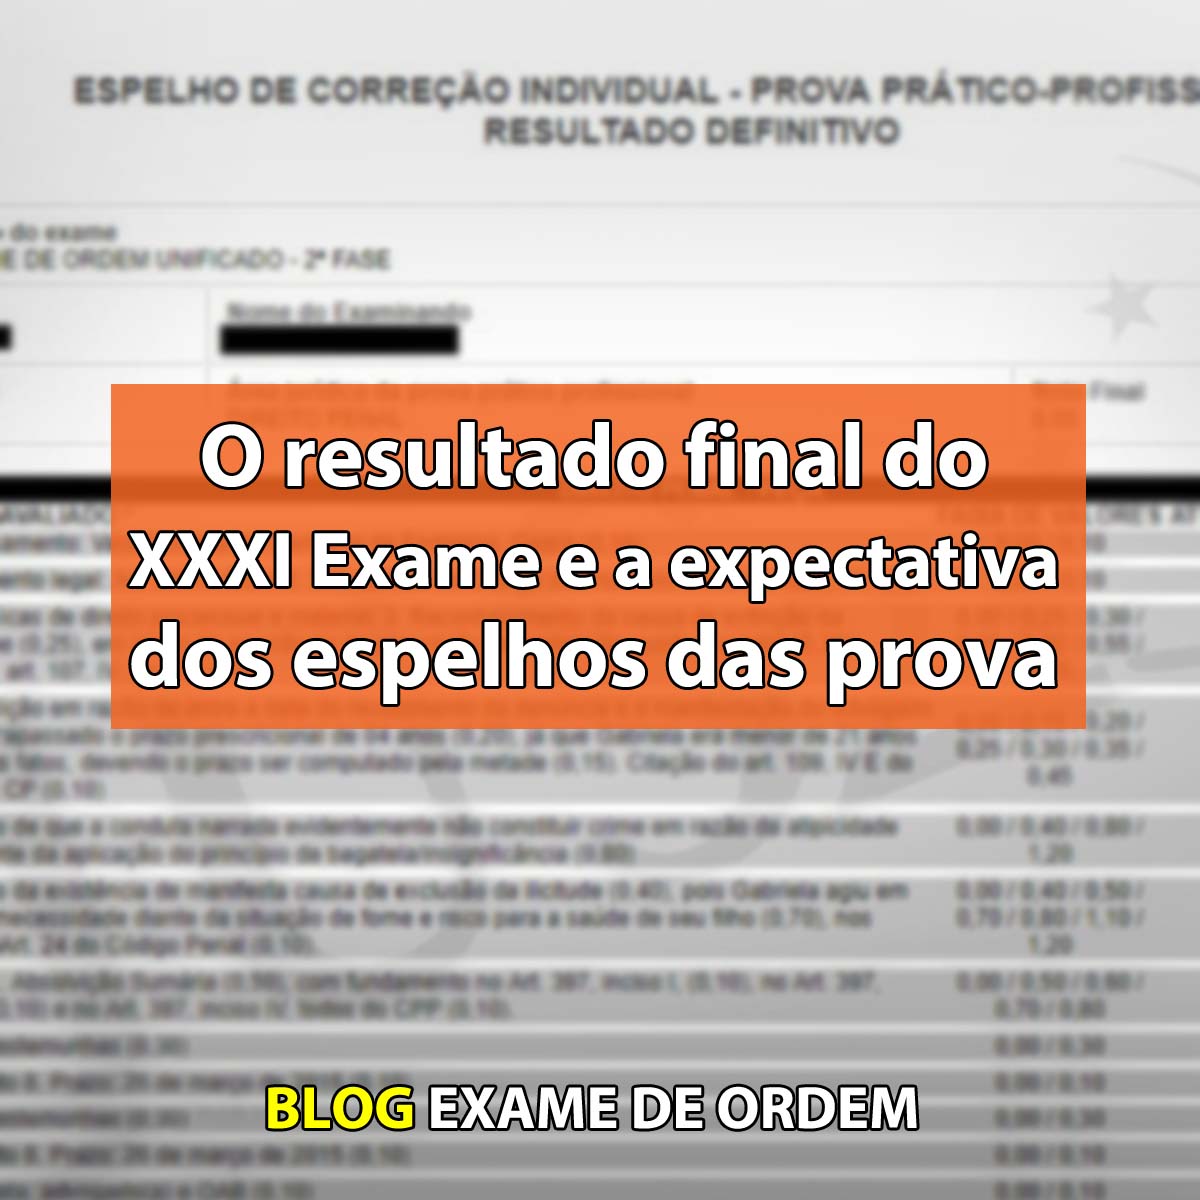 O calendário final do XXXI Exame e a expectativa dos espelhos das provas